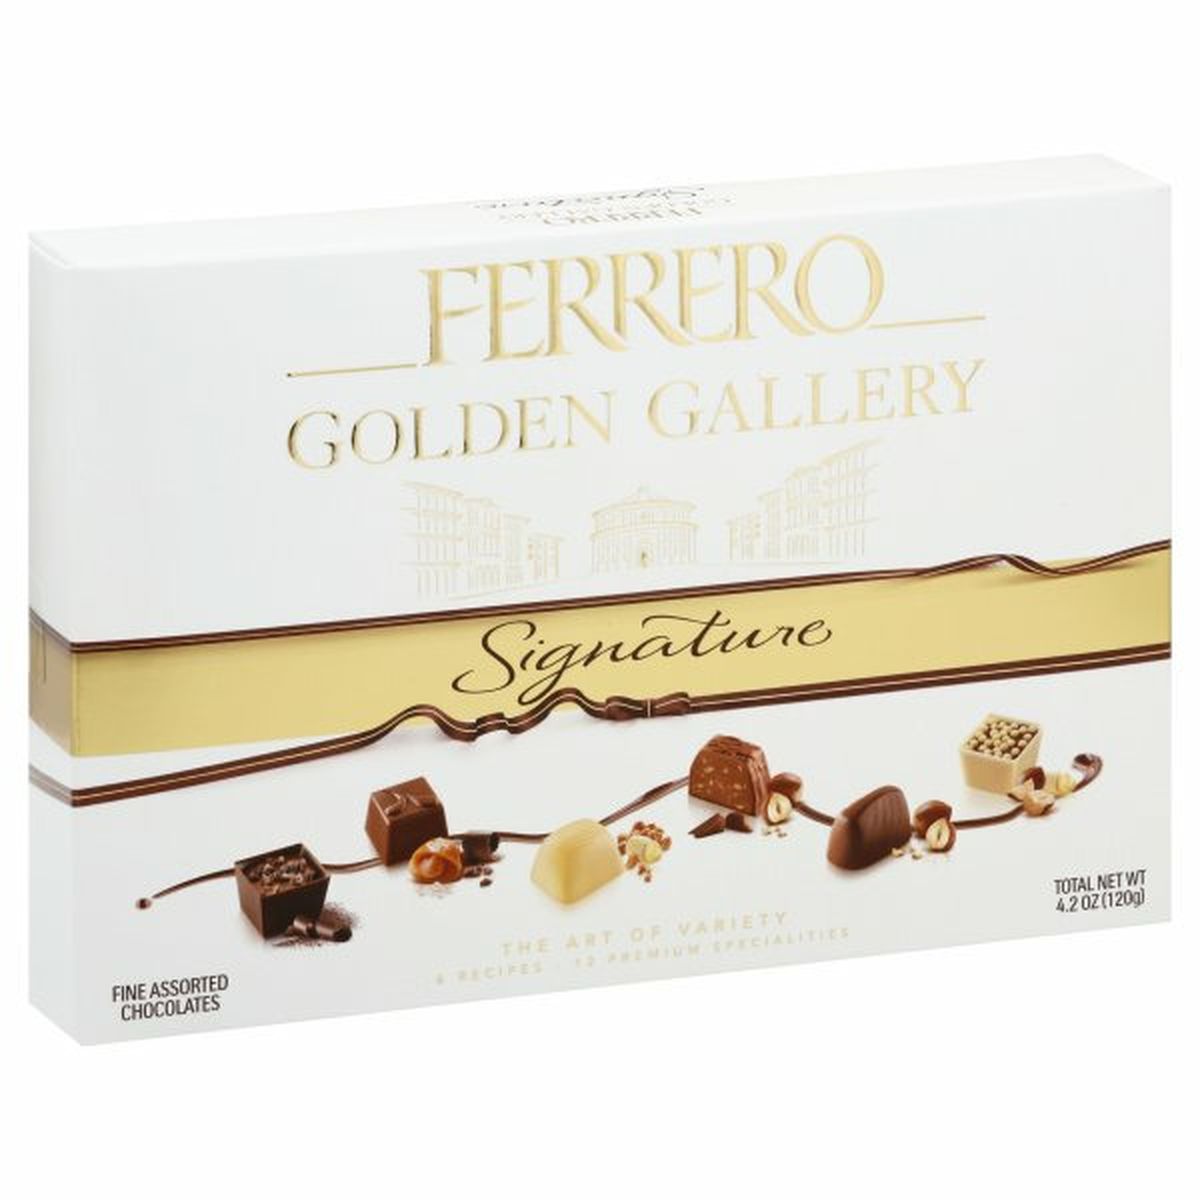 Calories in Ferrero Golden Gallery Chocolates, Fine Assorted, Signature